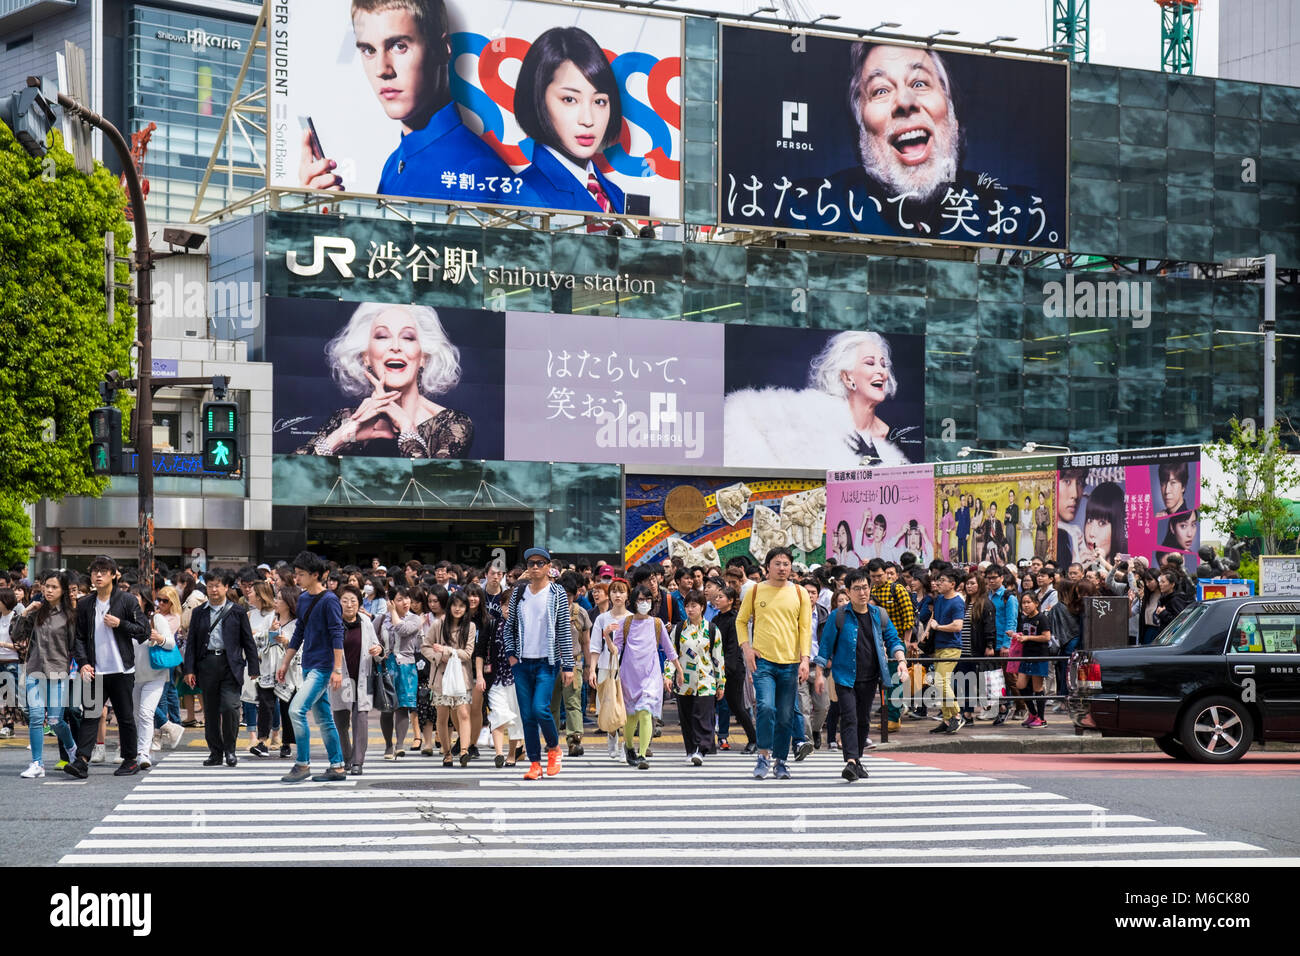 Croisement de Shibuya, Tokyo Japon - affluence sur le passage pour piétons Banque D'Images